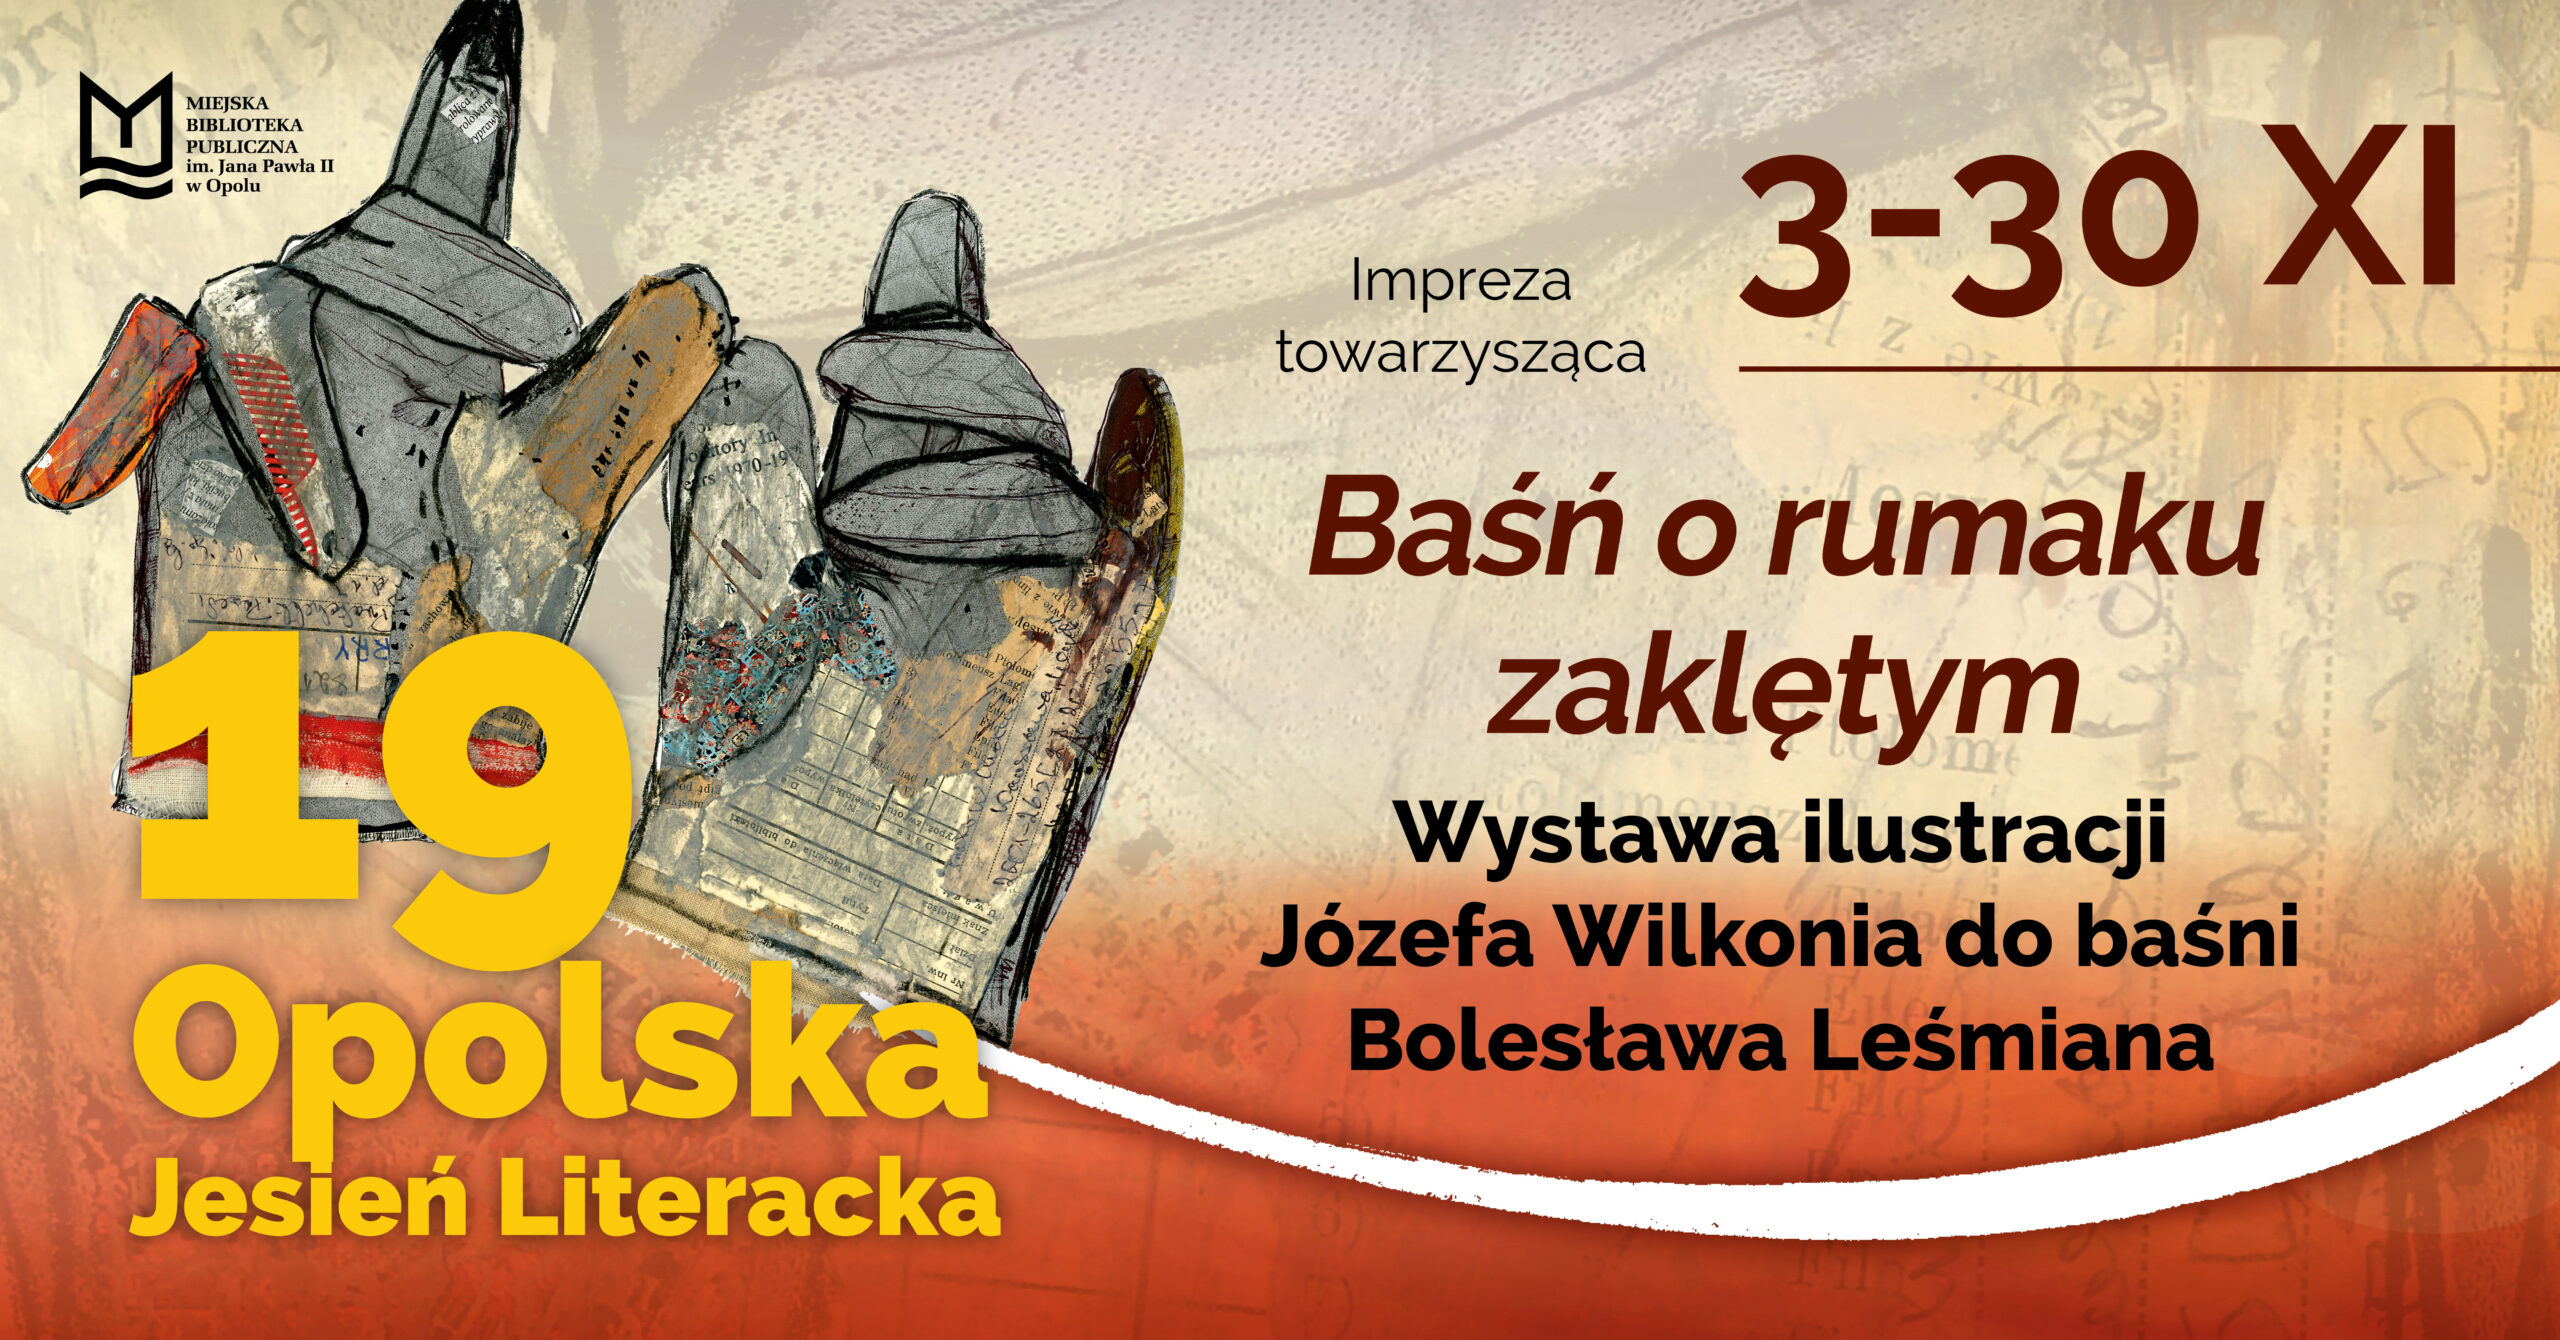 Baśń o rumaku zaklętym – wystawa ilustracji Józefa Wilkonia do baśni Bolesława Leśmiana